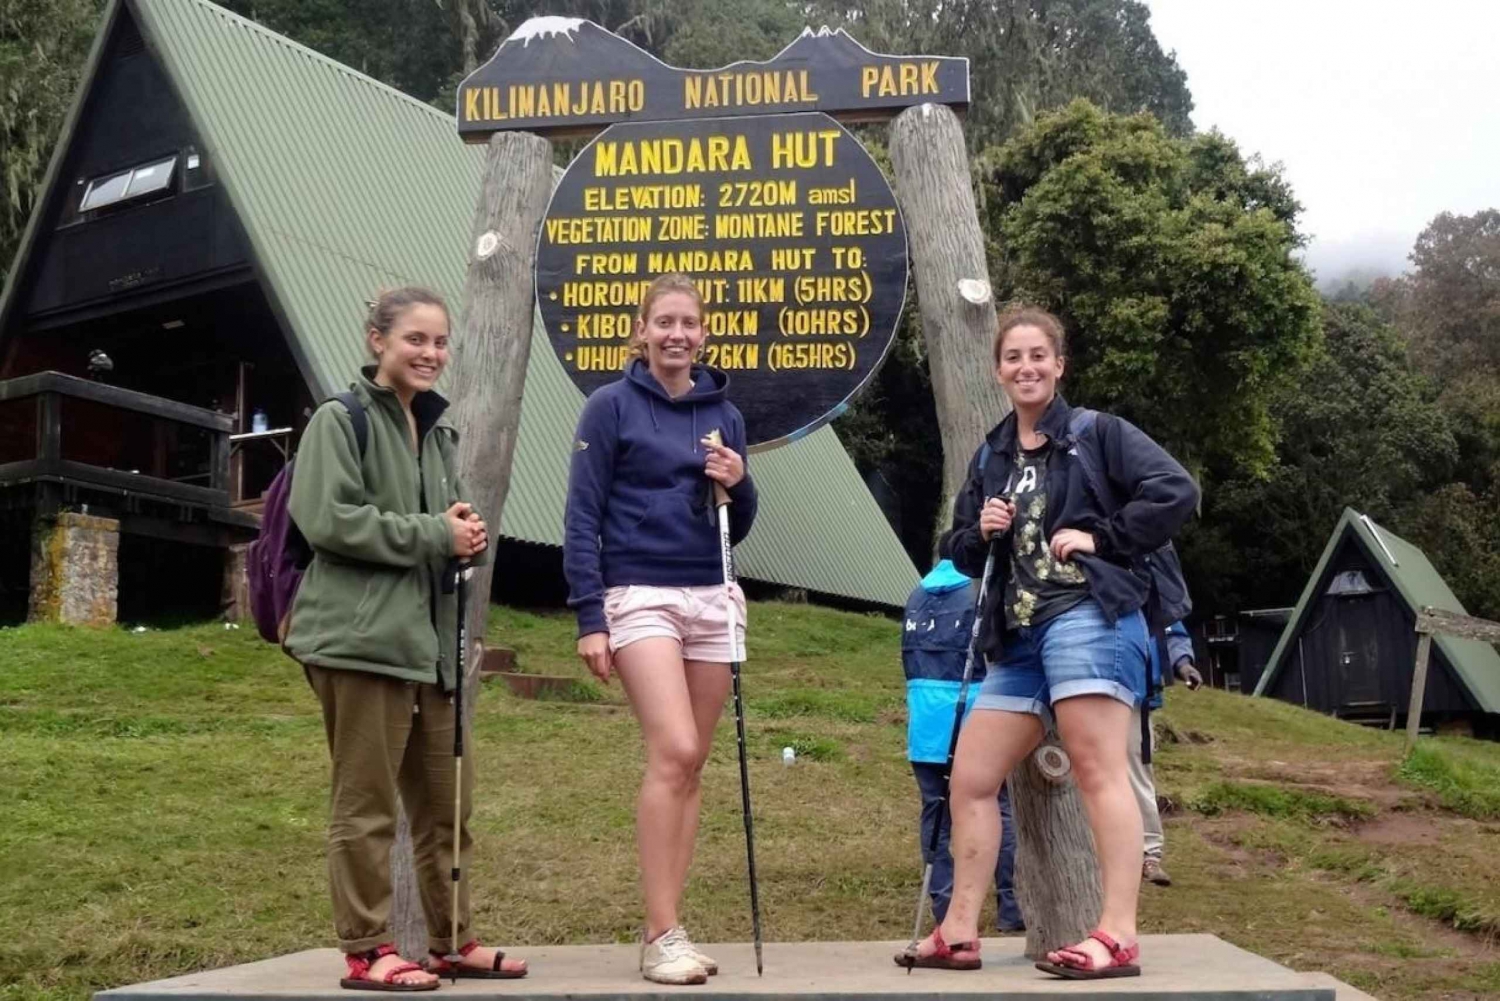 Kilimanjaro Day Hike to Mandara huts